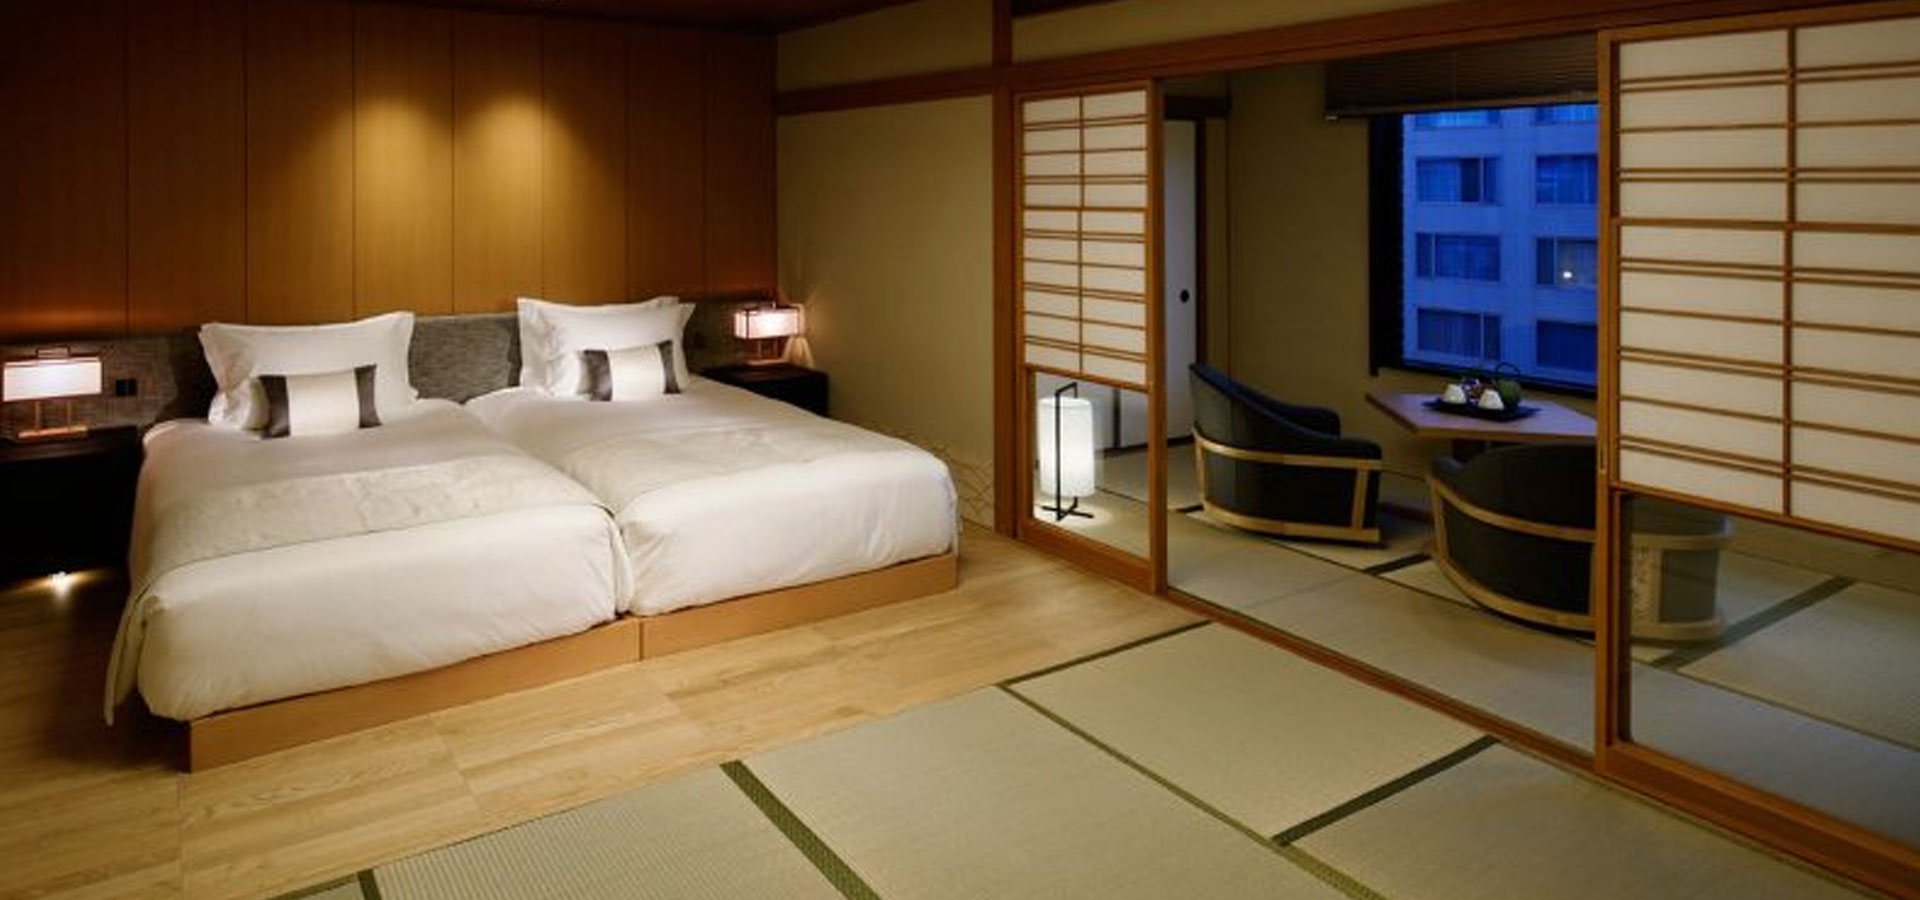 高輪花香路 TAKANAWA HANAKOHRO- 高輪格蘭王子大飯店內新設了共有16間的“旅館”